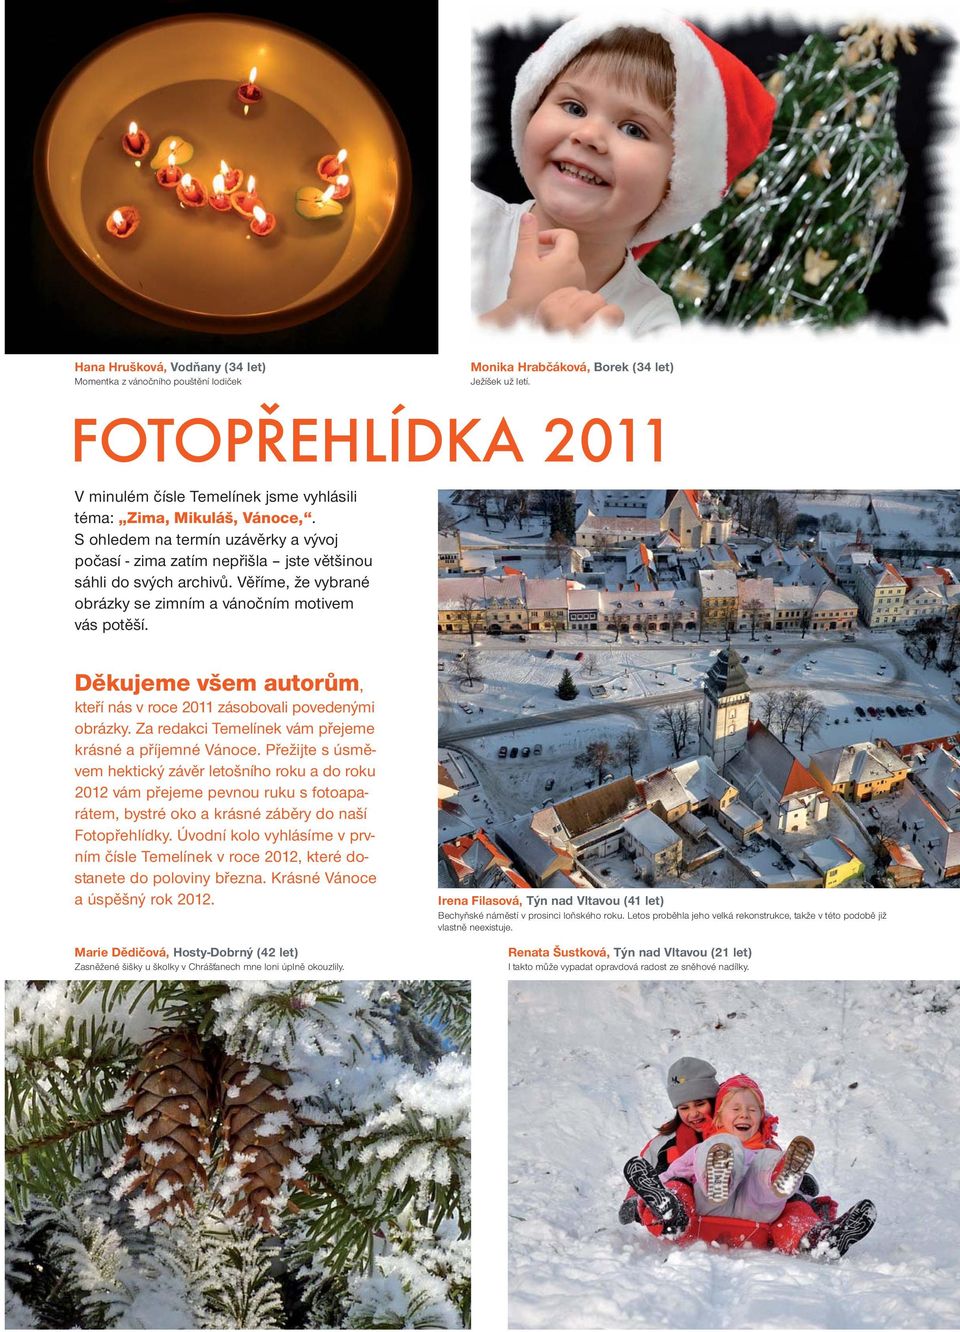 Monika Hrabčáková, Borek (34 let) Ježíšek už letí. FOTOPŘEHLÍDKA 2011 Děkujeme všem autorům, kteří nás v roce 2011 zásobovali povedenými obrázky.